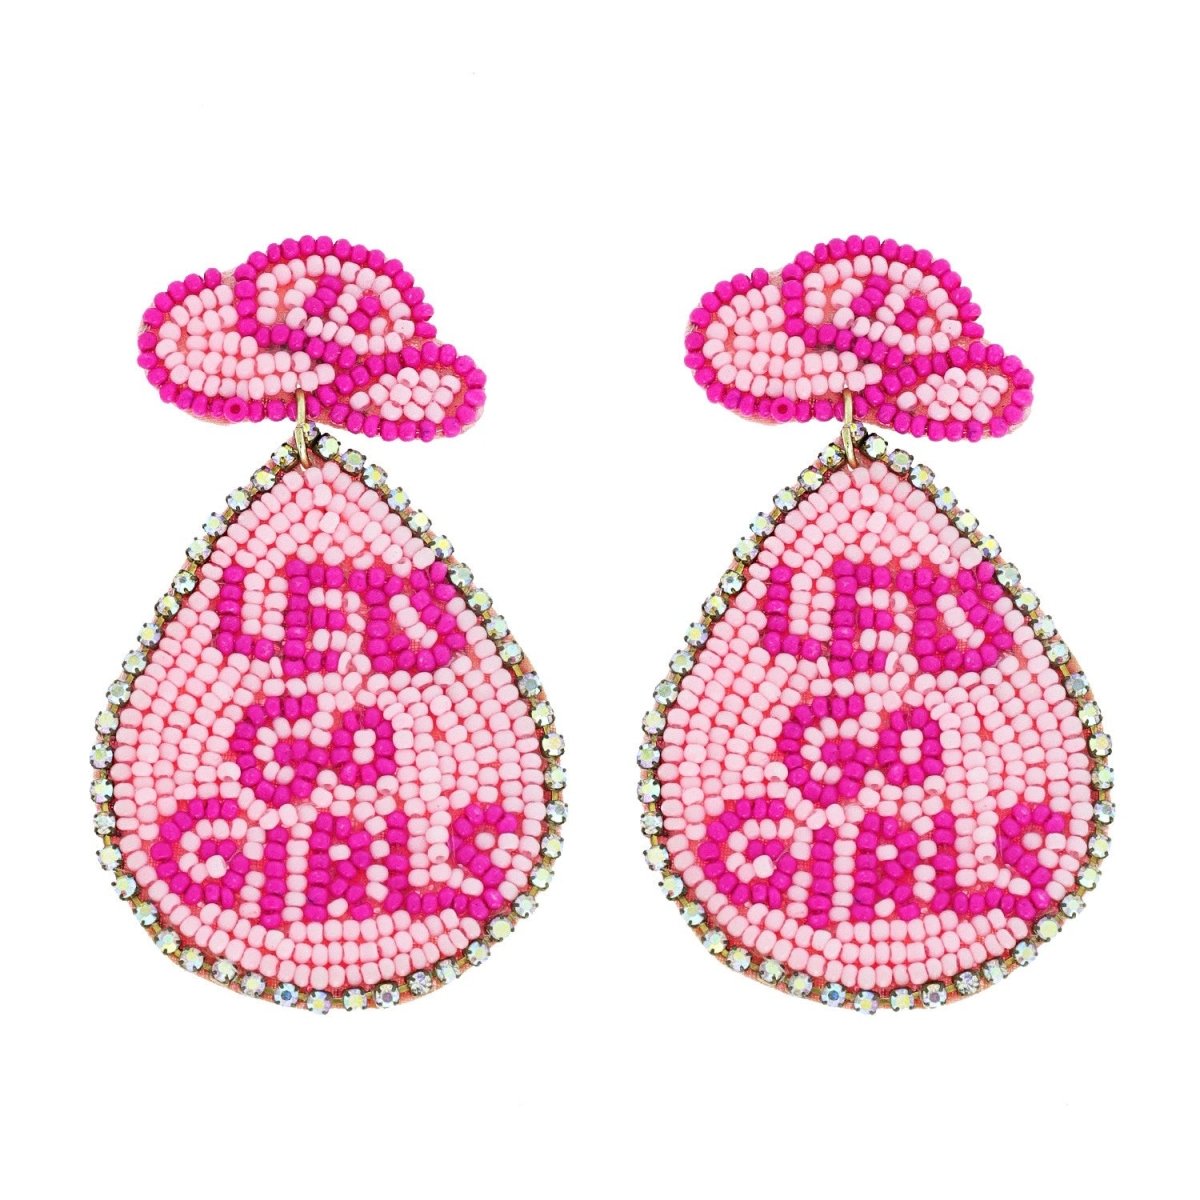 Cowboy Hat Let's Go Girls Beaded Earrings - earrings - Jimberly's Boutique